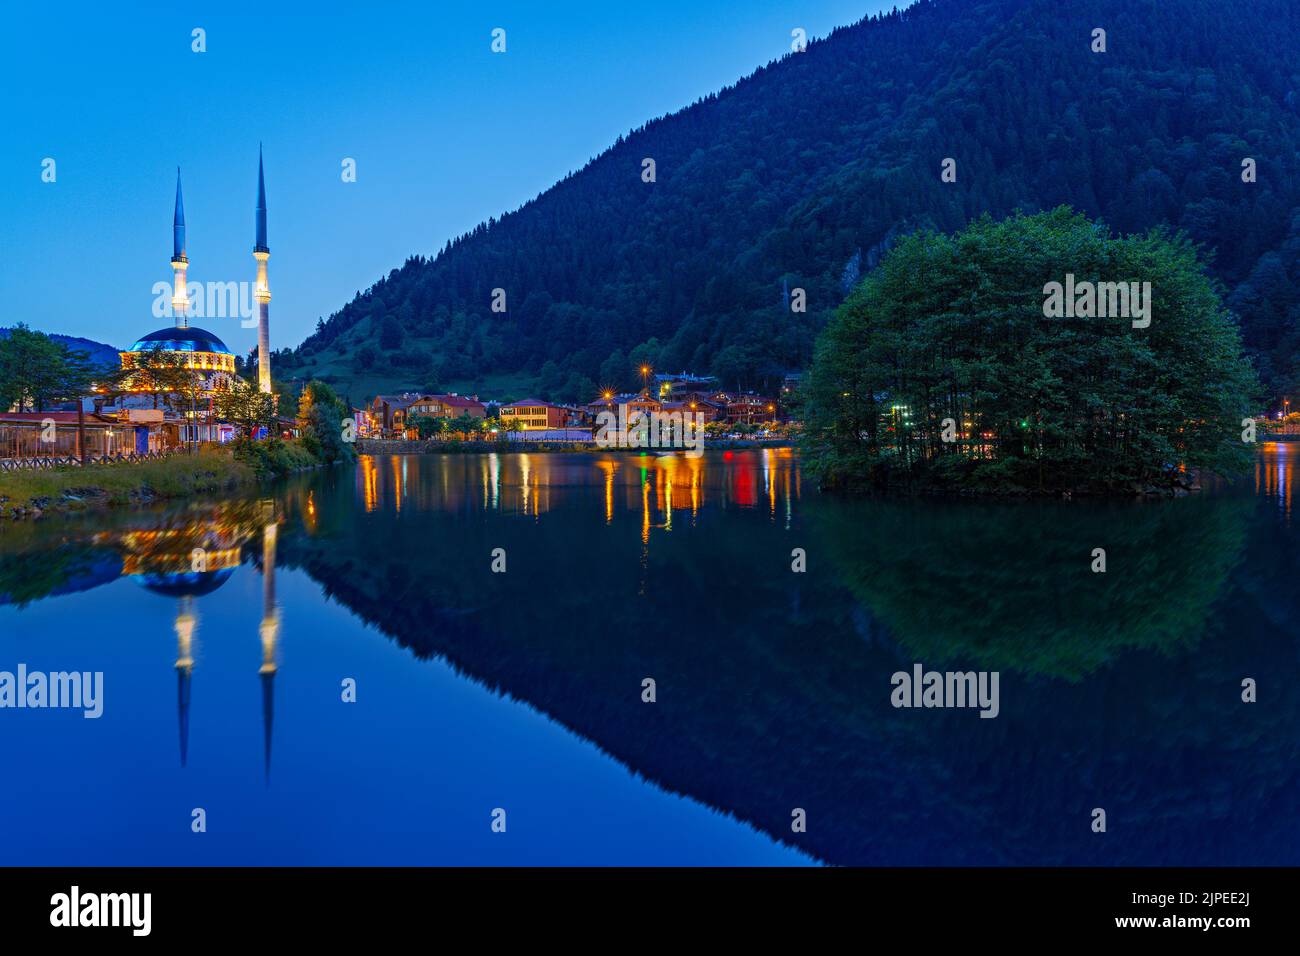 La mezquita de Uzungol y su reflejo en el agua al atardecer en la ciudad de montaña de Uzungol, Turquía Foto de stock